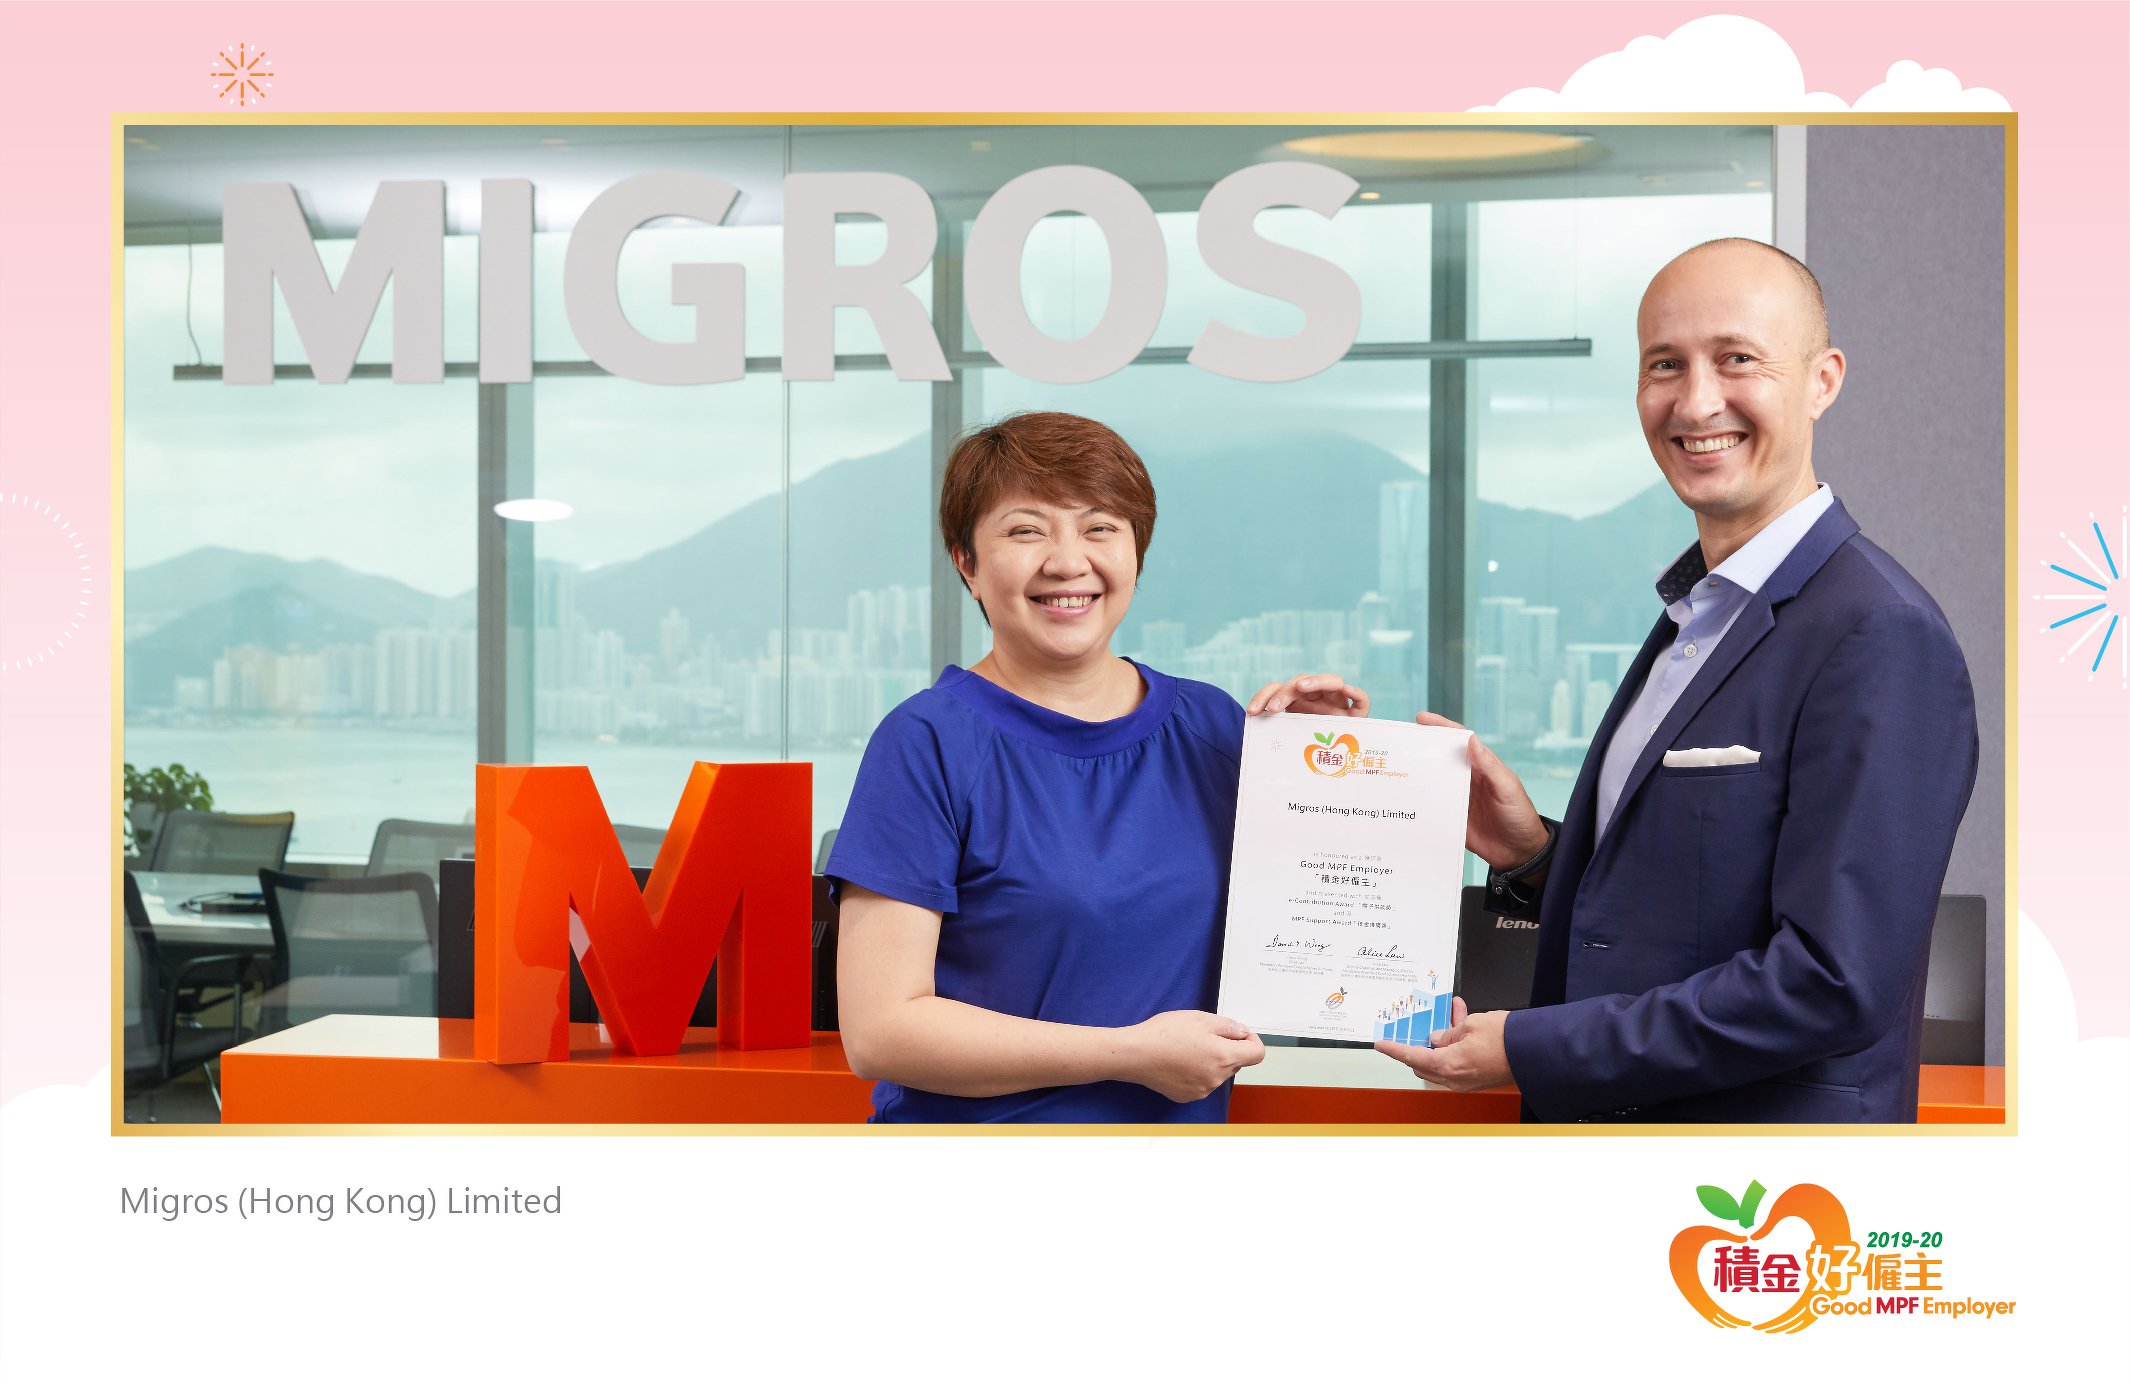 Migros (Hong Kong) Limited